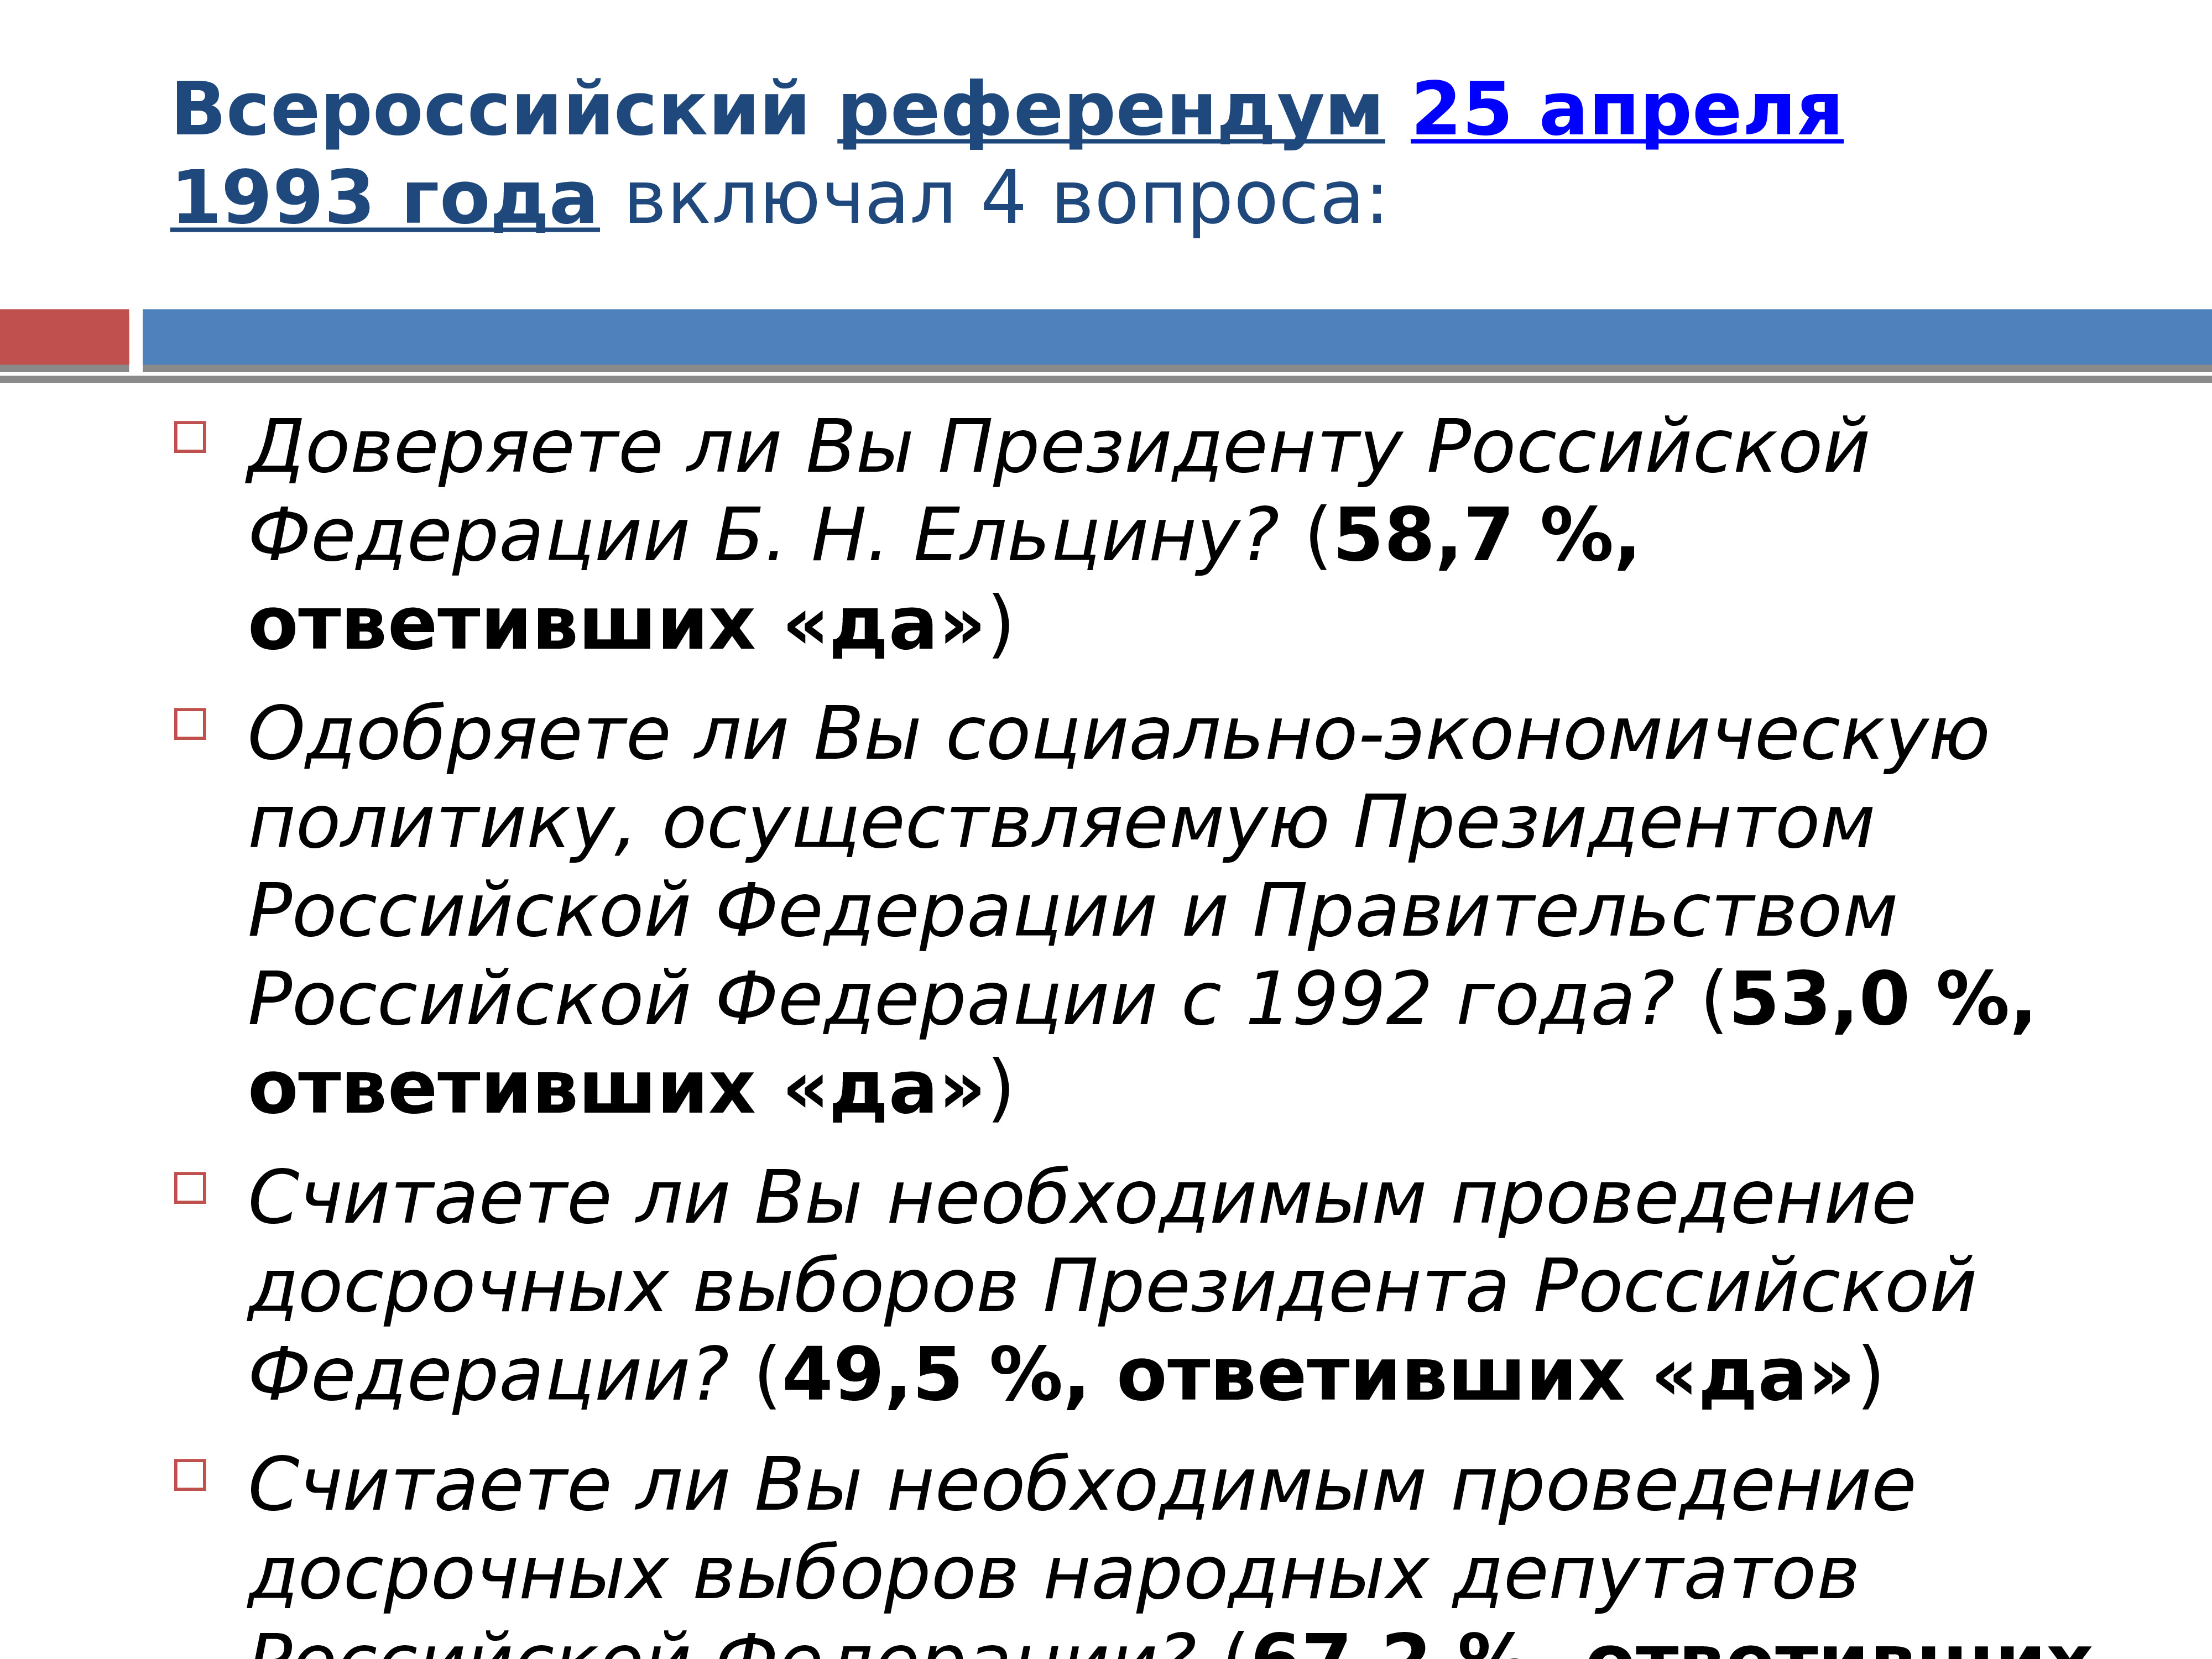 Причины политического кризиса 1993. Политический кризис 1993. Политический кризис 1993 года. Всероссийский референдум 25 апреля 1993 года.